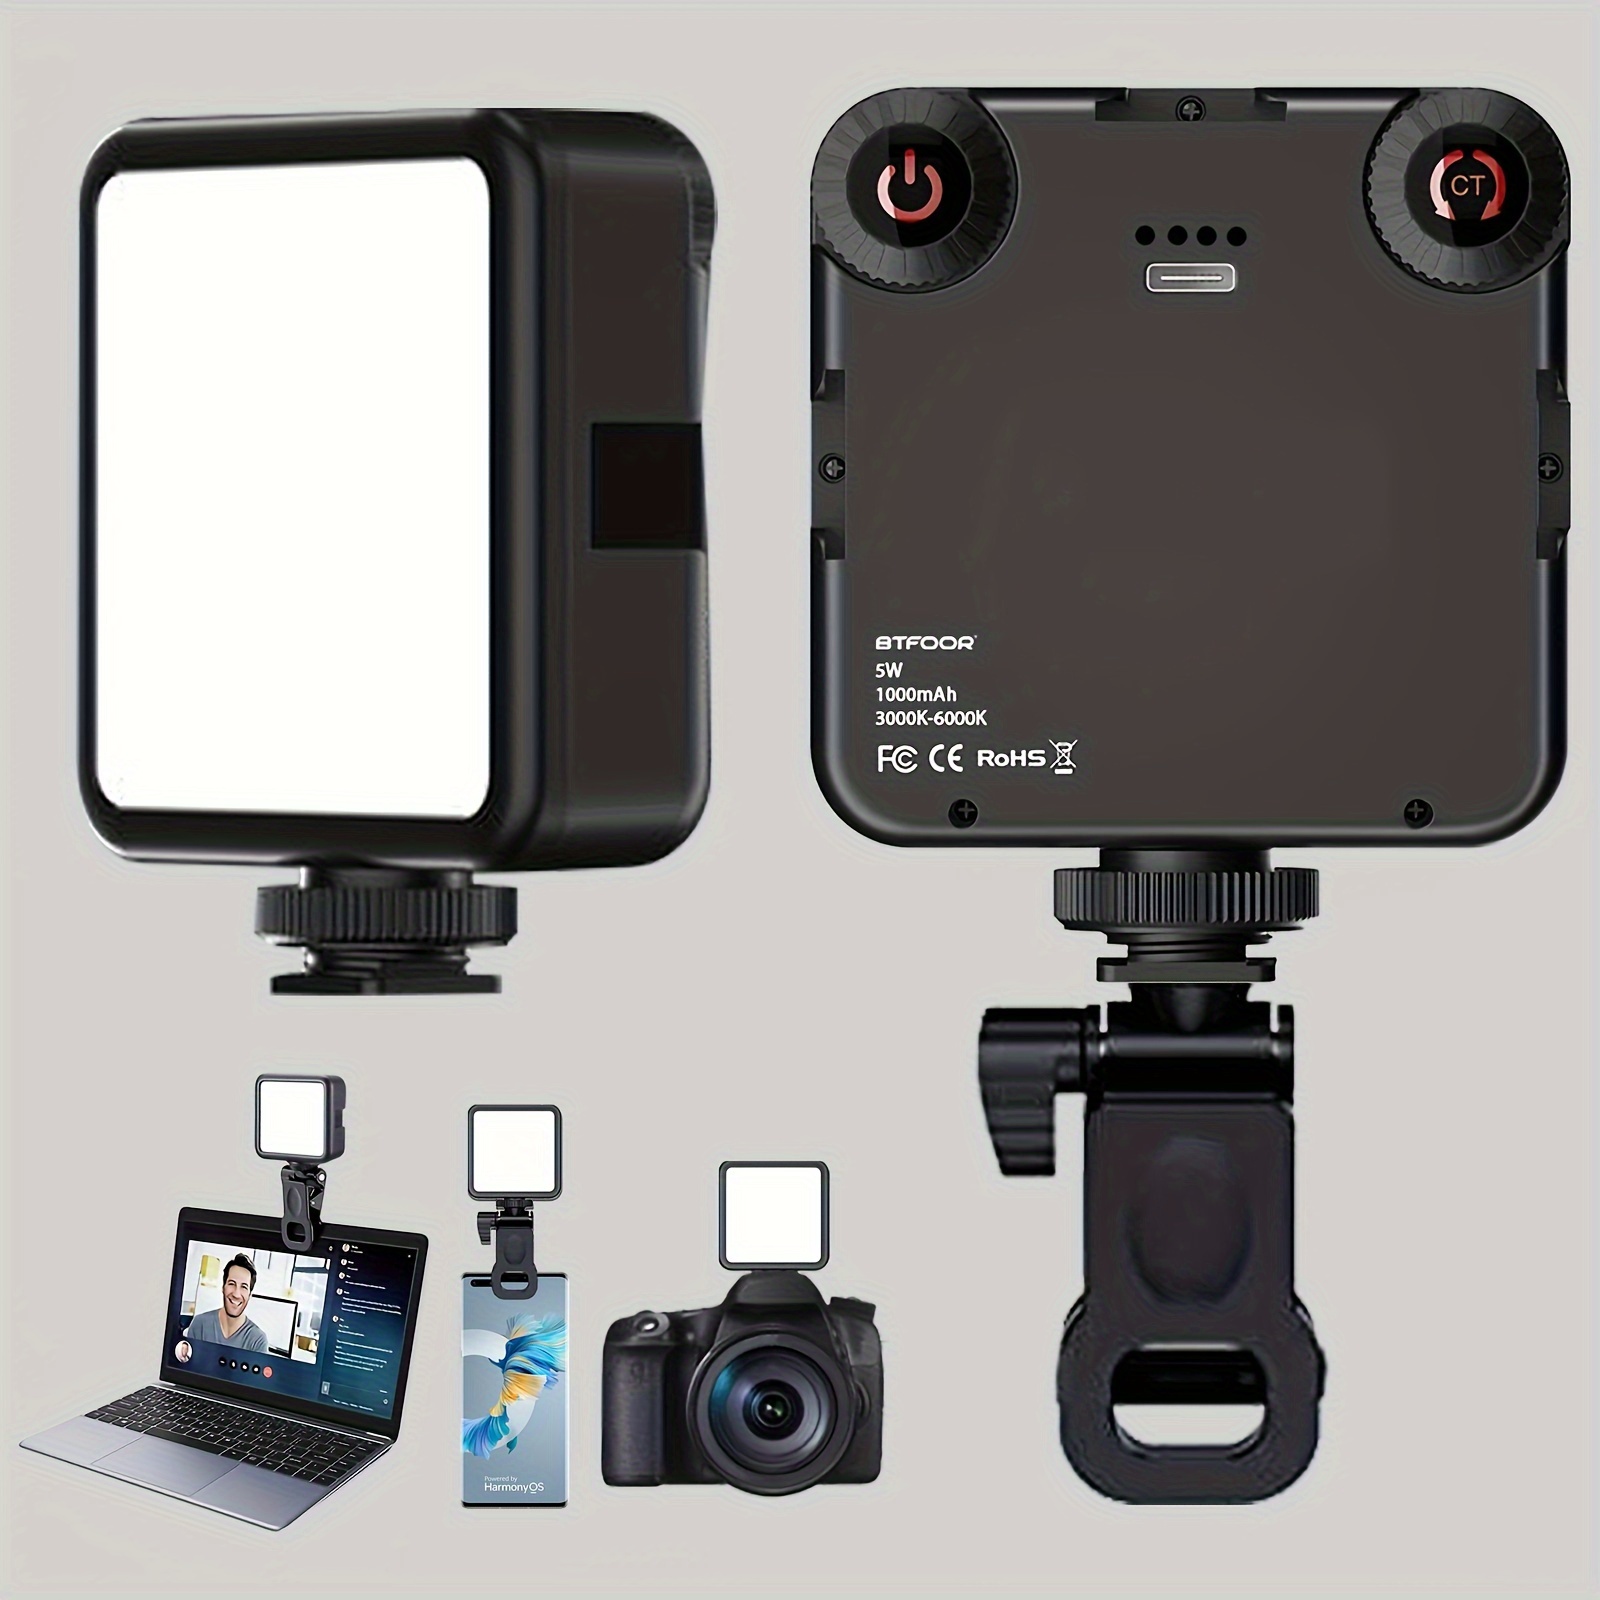 Luz LED recargable por USB para selfie, luz de foto portátil con 97+ CRI,  hasta 6500 K temperatura de color luz de teléfono para selfie, conferencia